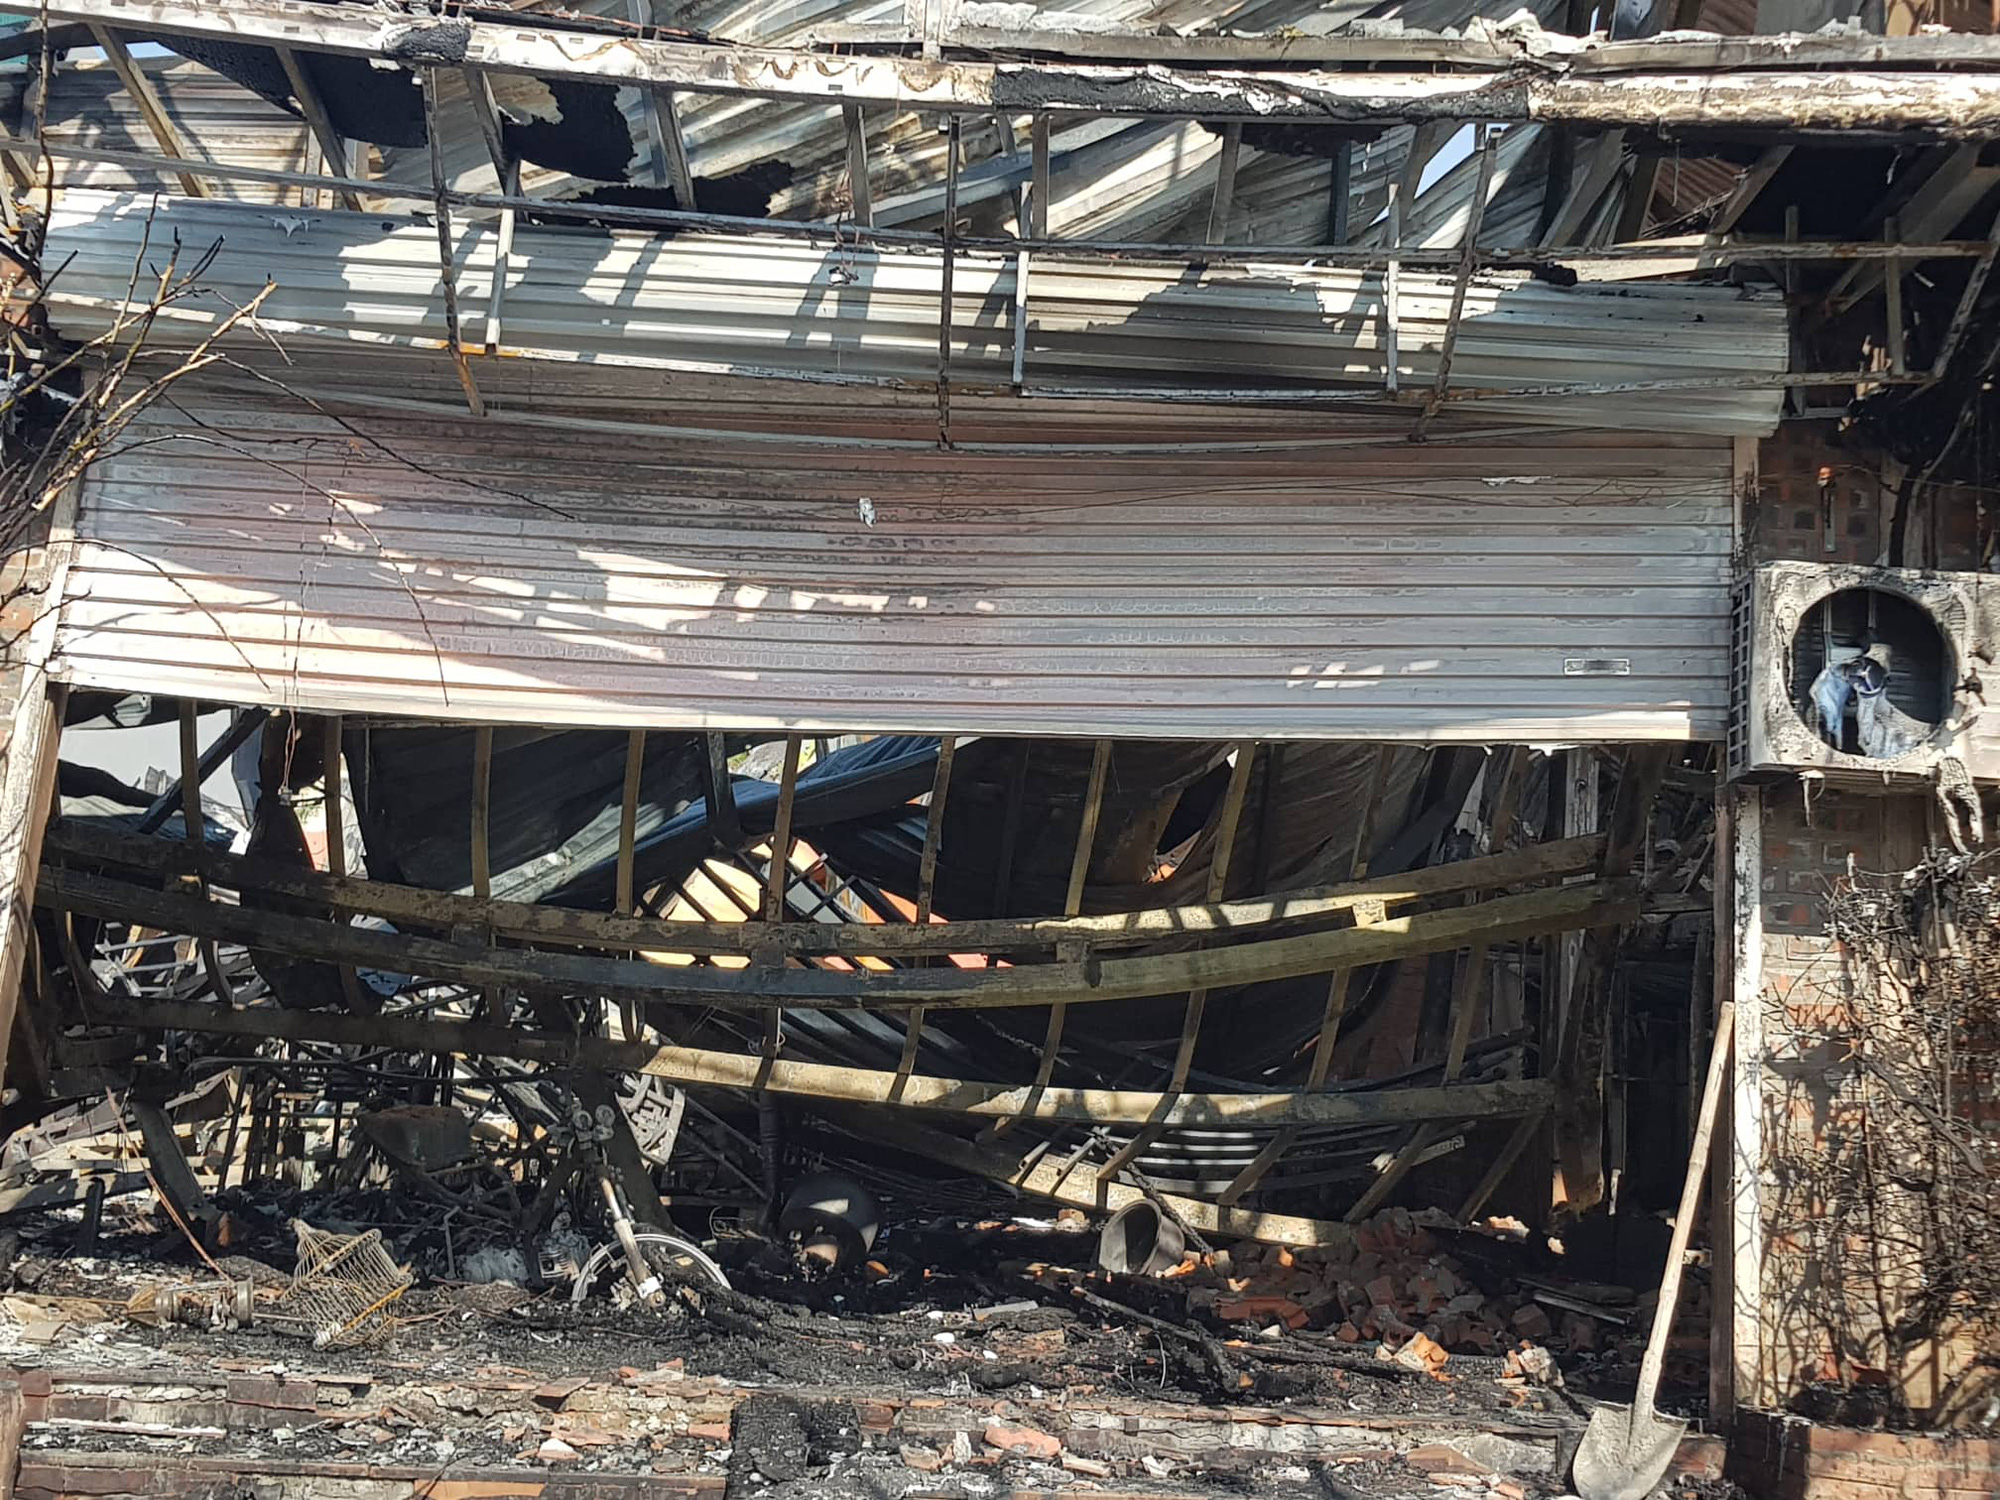 Kinh hoàng lời kể nhân chứng vụ cháy nhà hàng khiến 4 người tử vong tại Vĩnh Phúc - Ảnh 5.